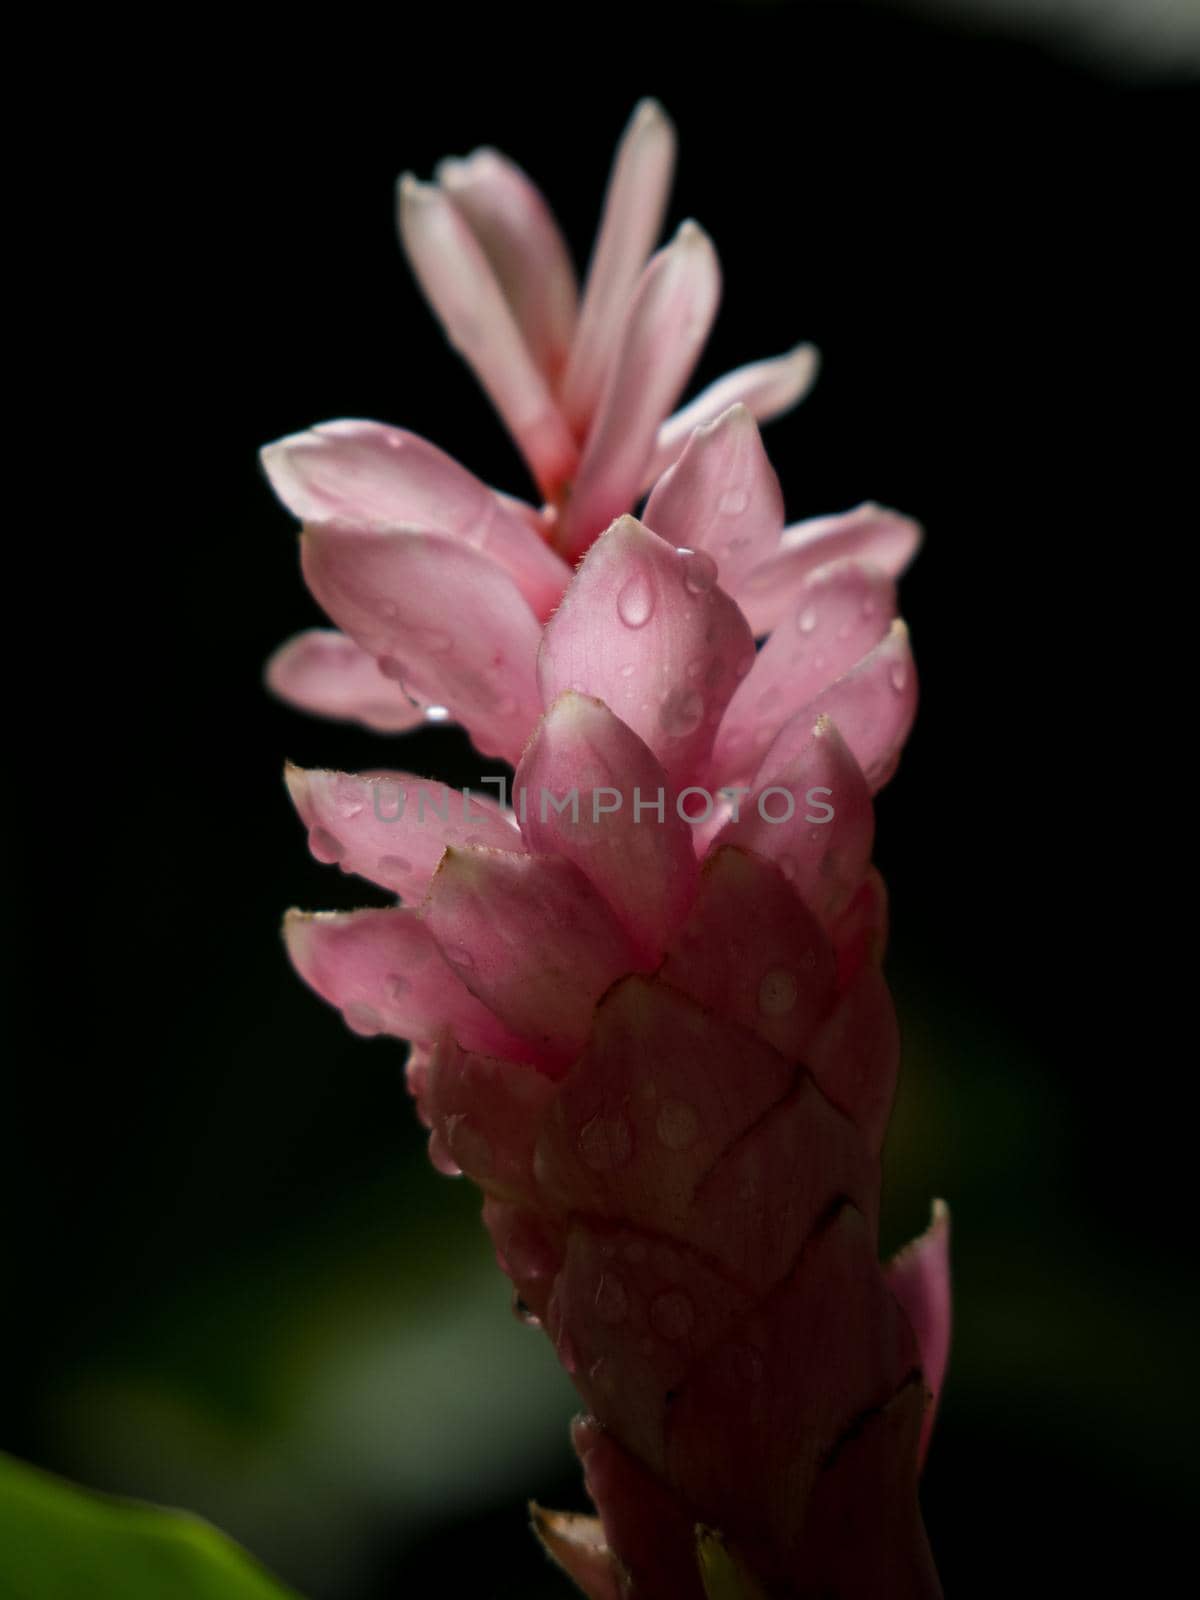 Pink flower with dark background by azamshah72